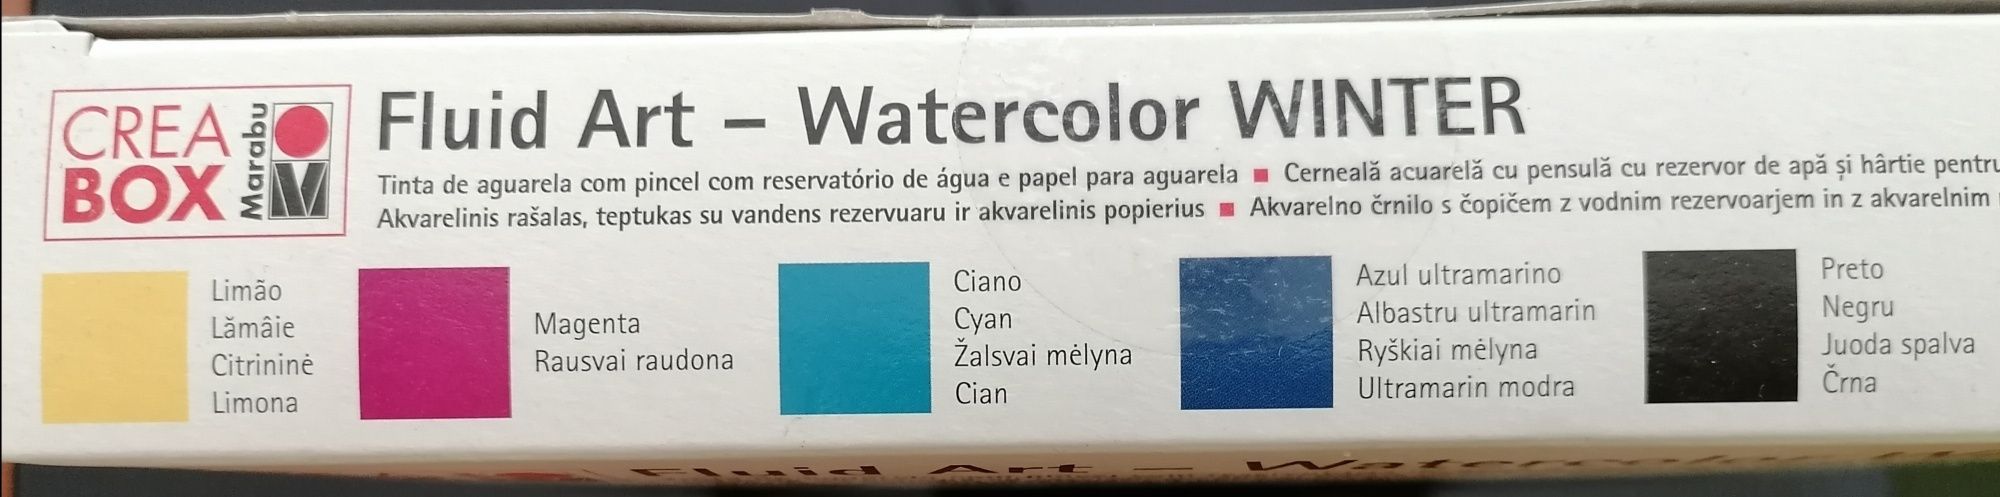 Kit de tinta de aguarela, papel e pincel com reservatório de água Novo